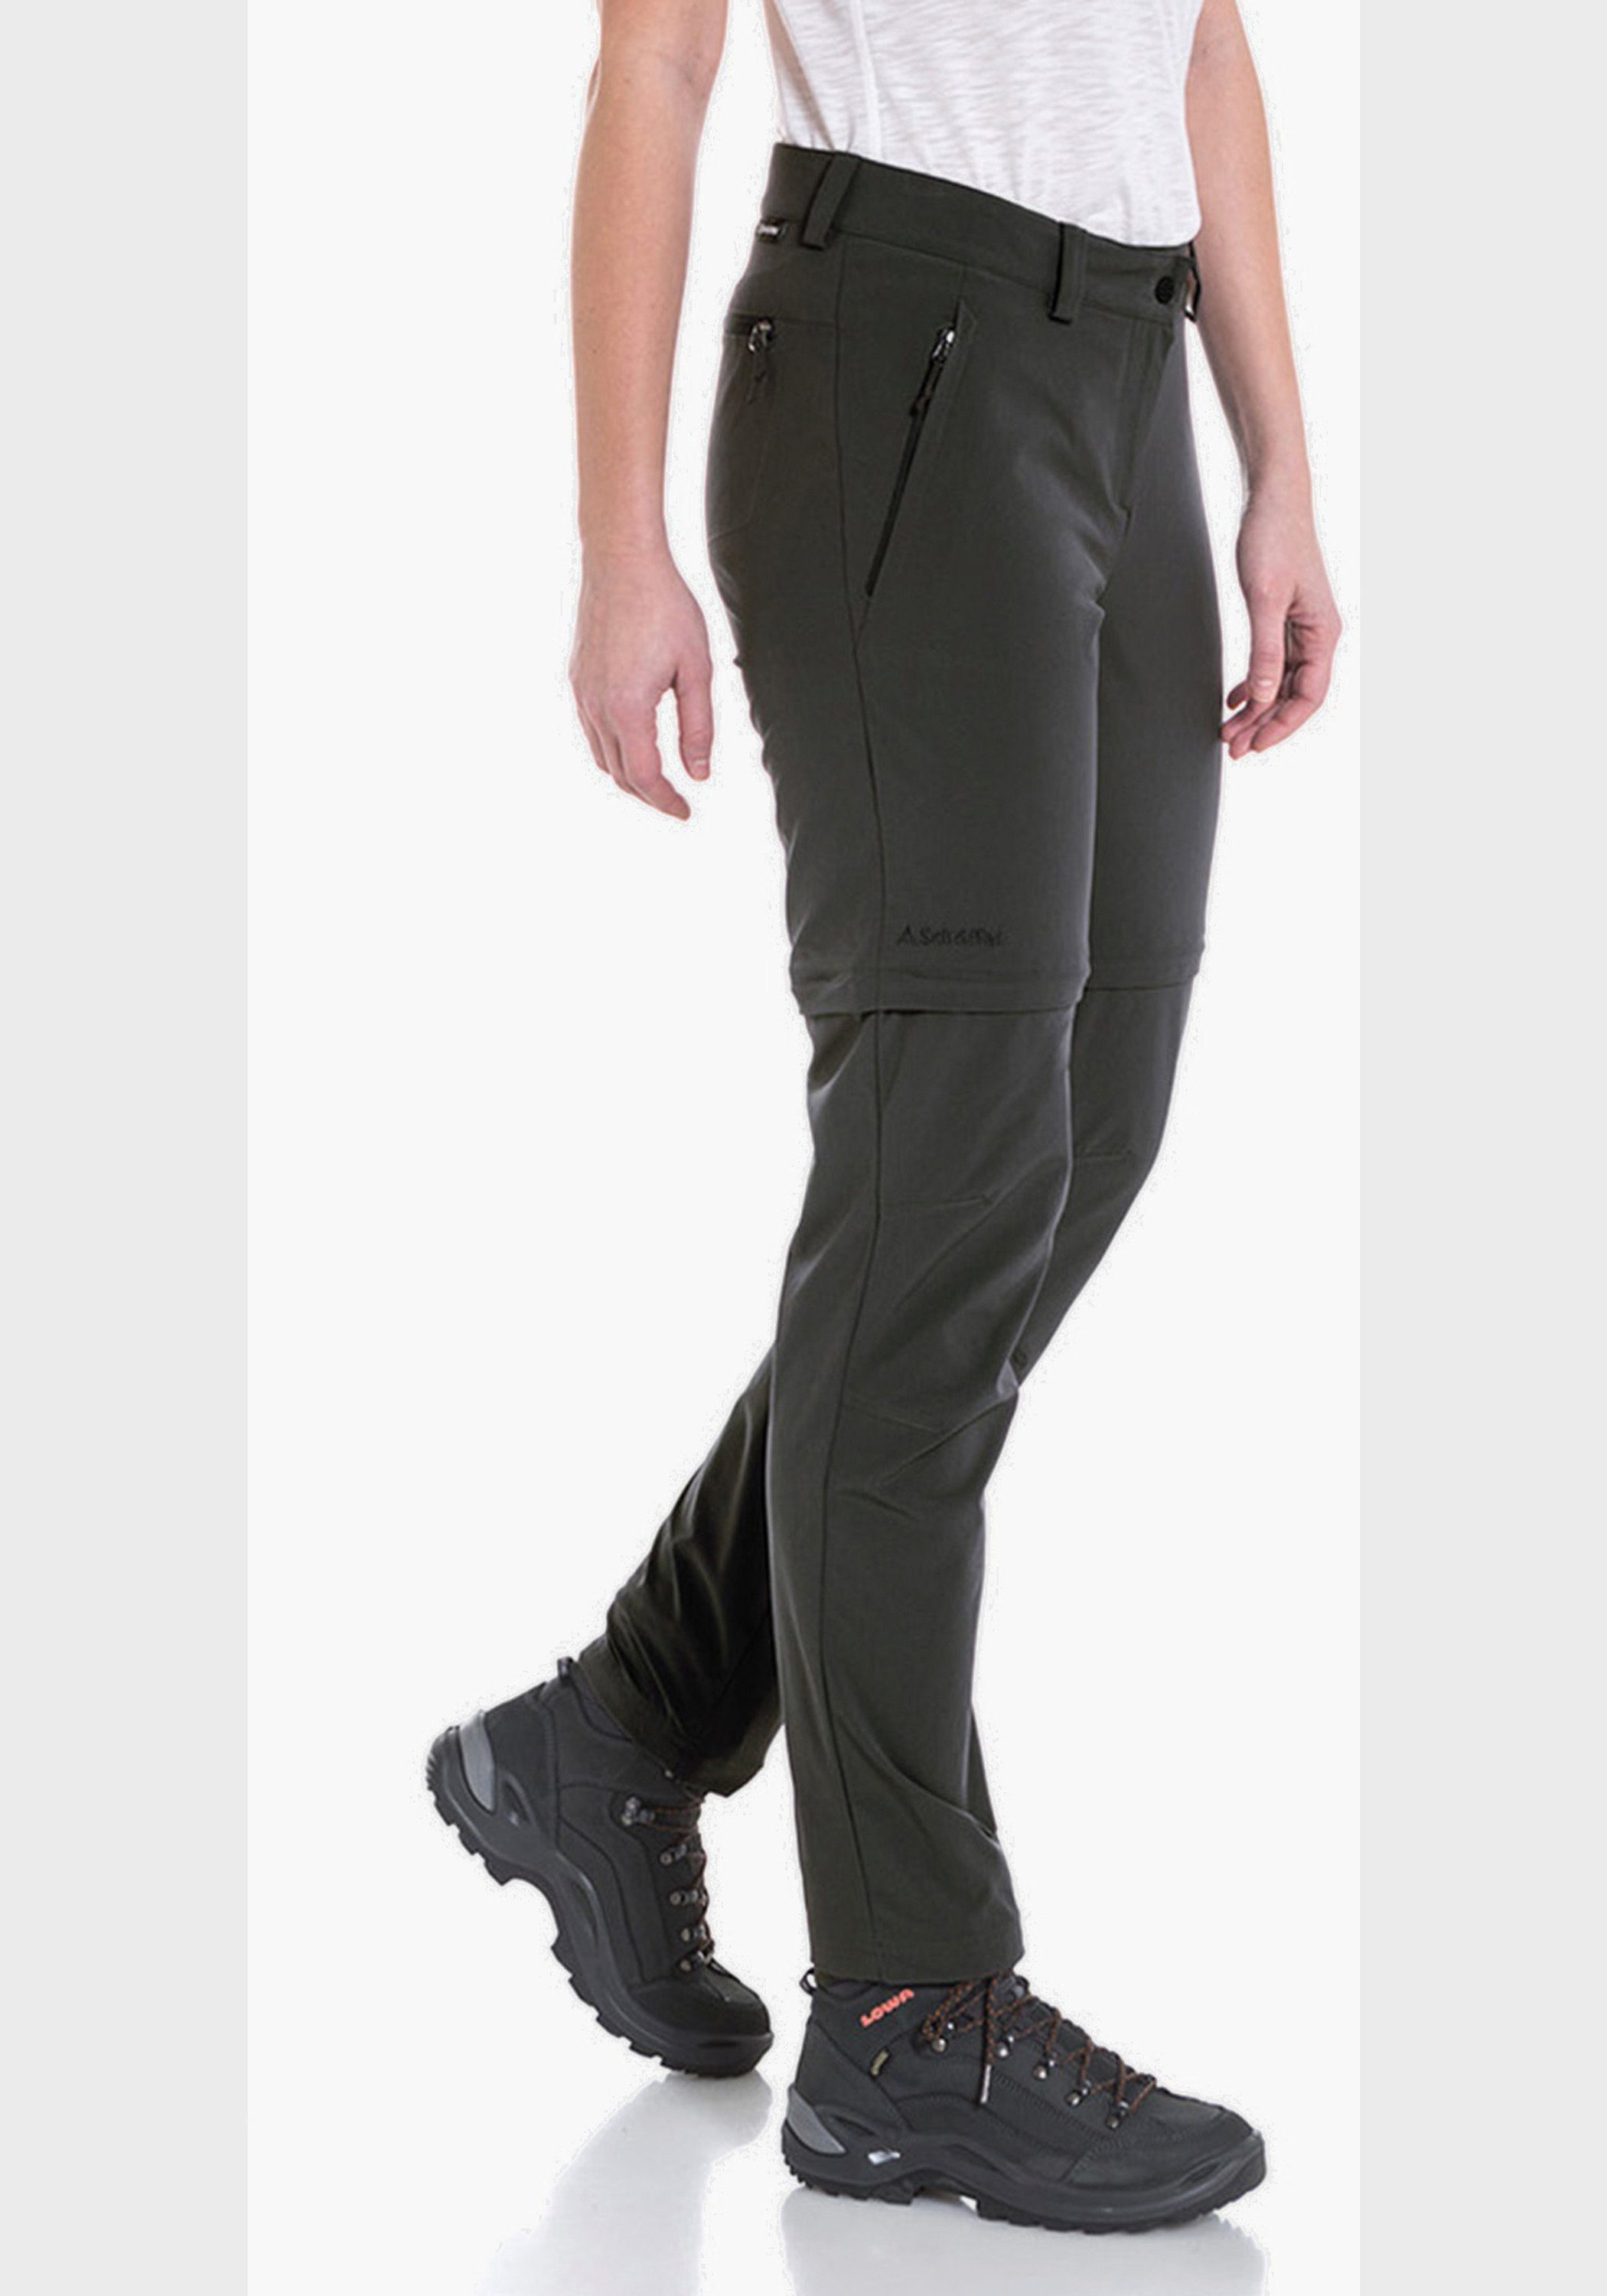 Schöffel Zip-away-Hose graphit Pants Off Zip